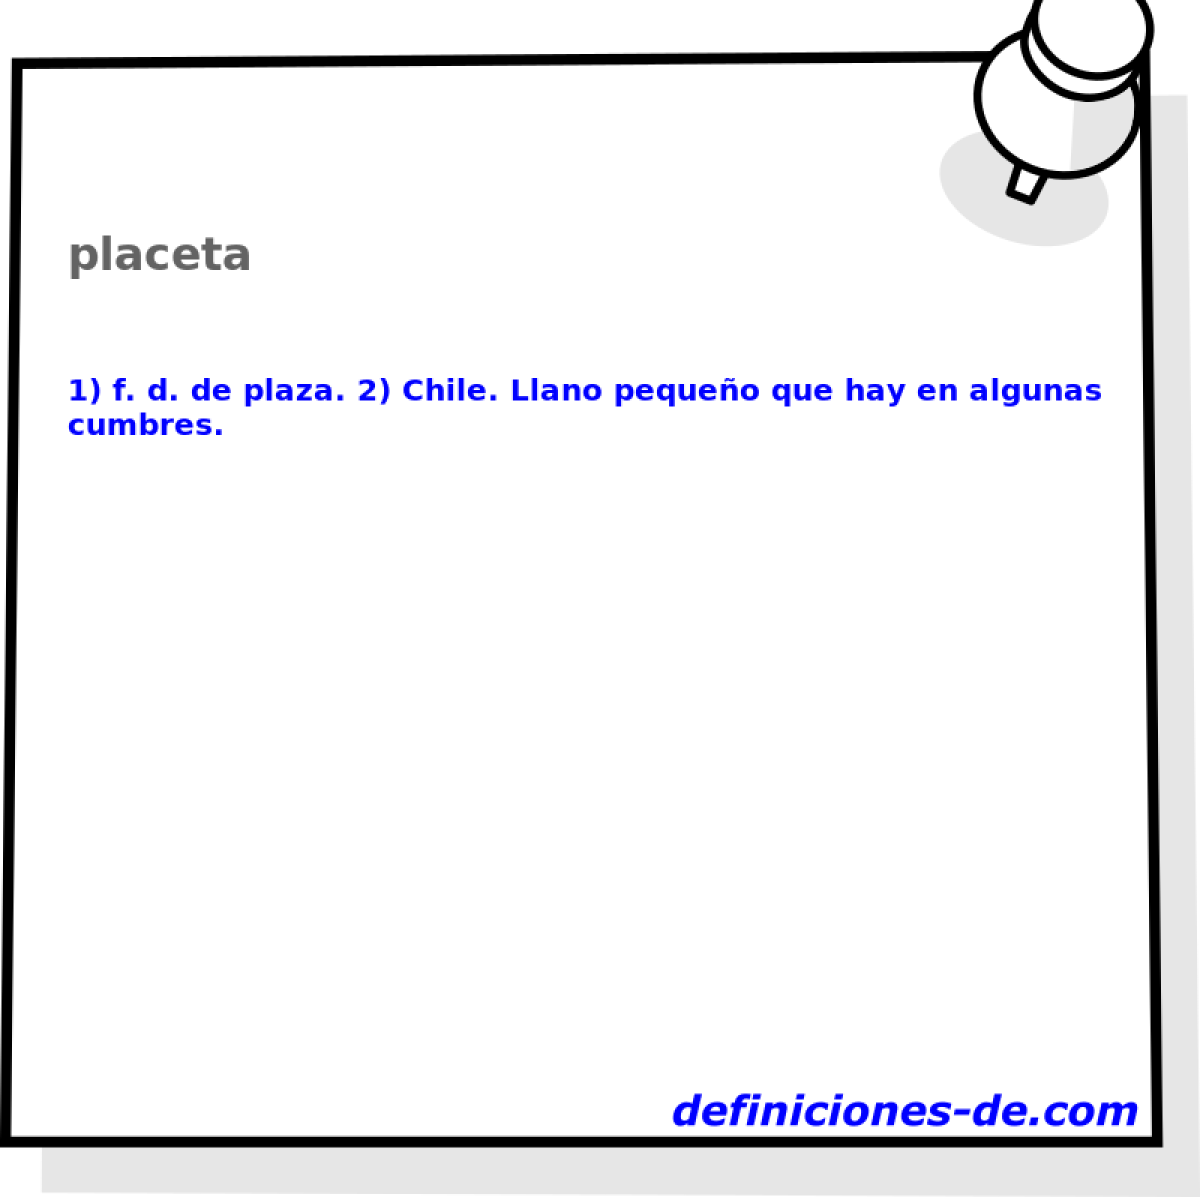 placeta 